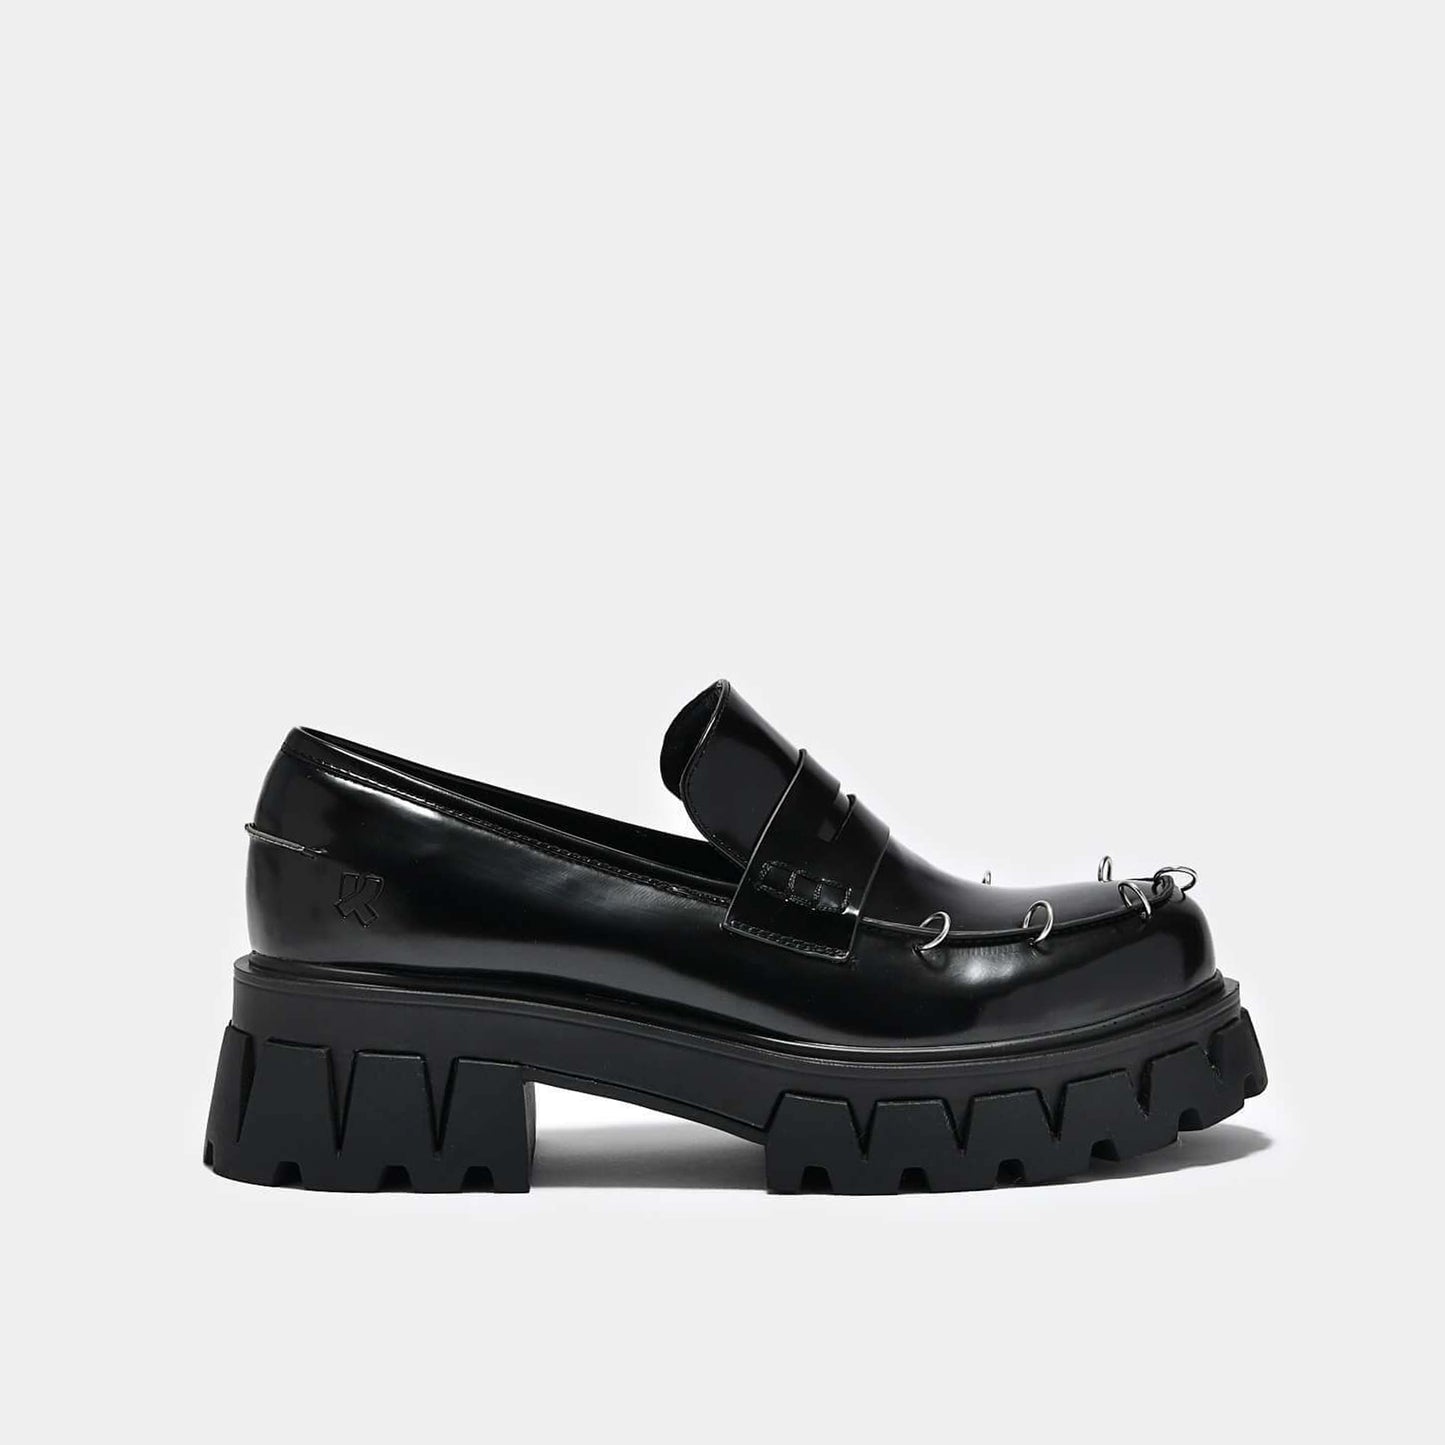 Gensai Men's Cyber Punk Loafers - Shoes - KOI Footwear - Black - Side View